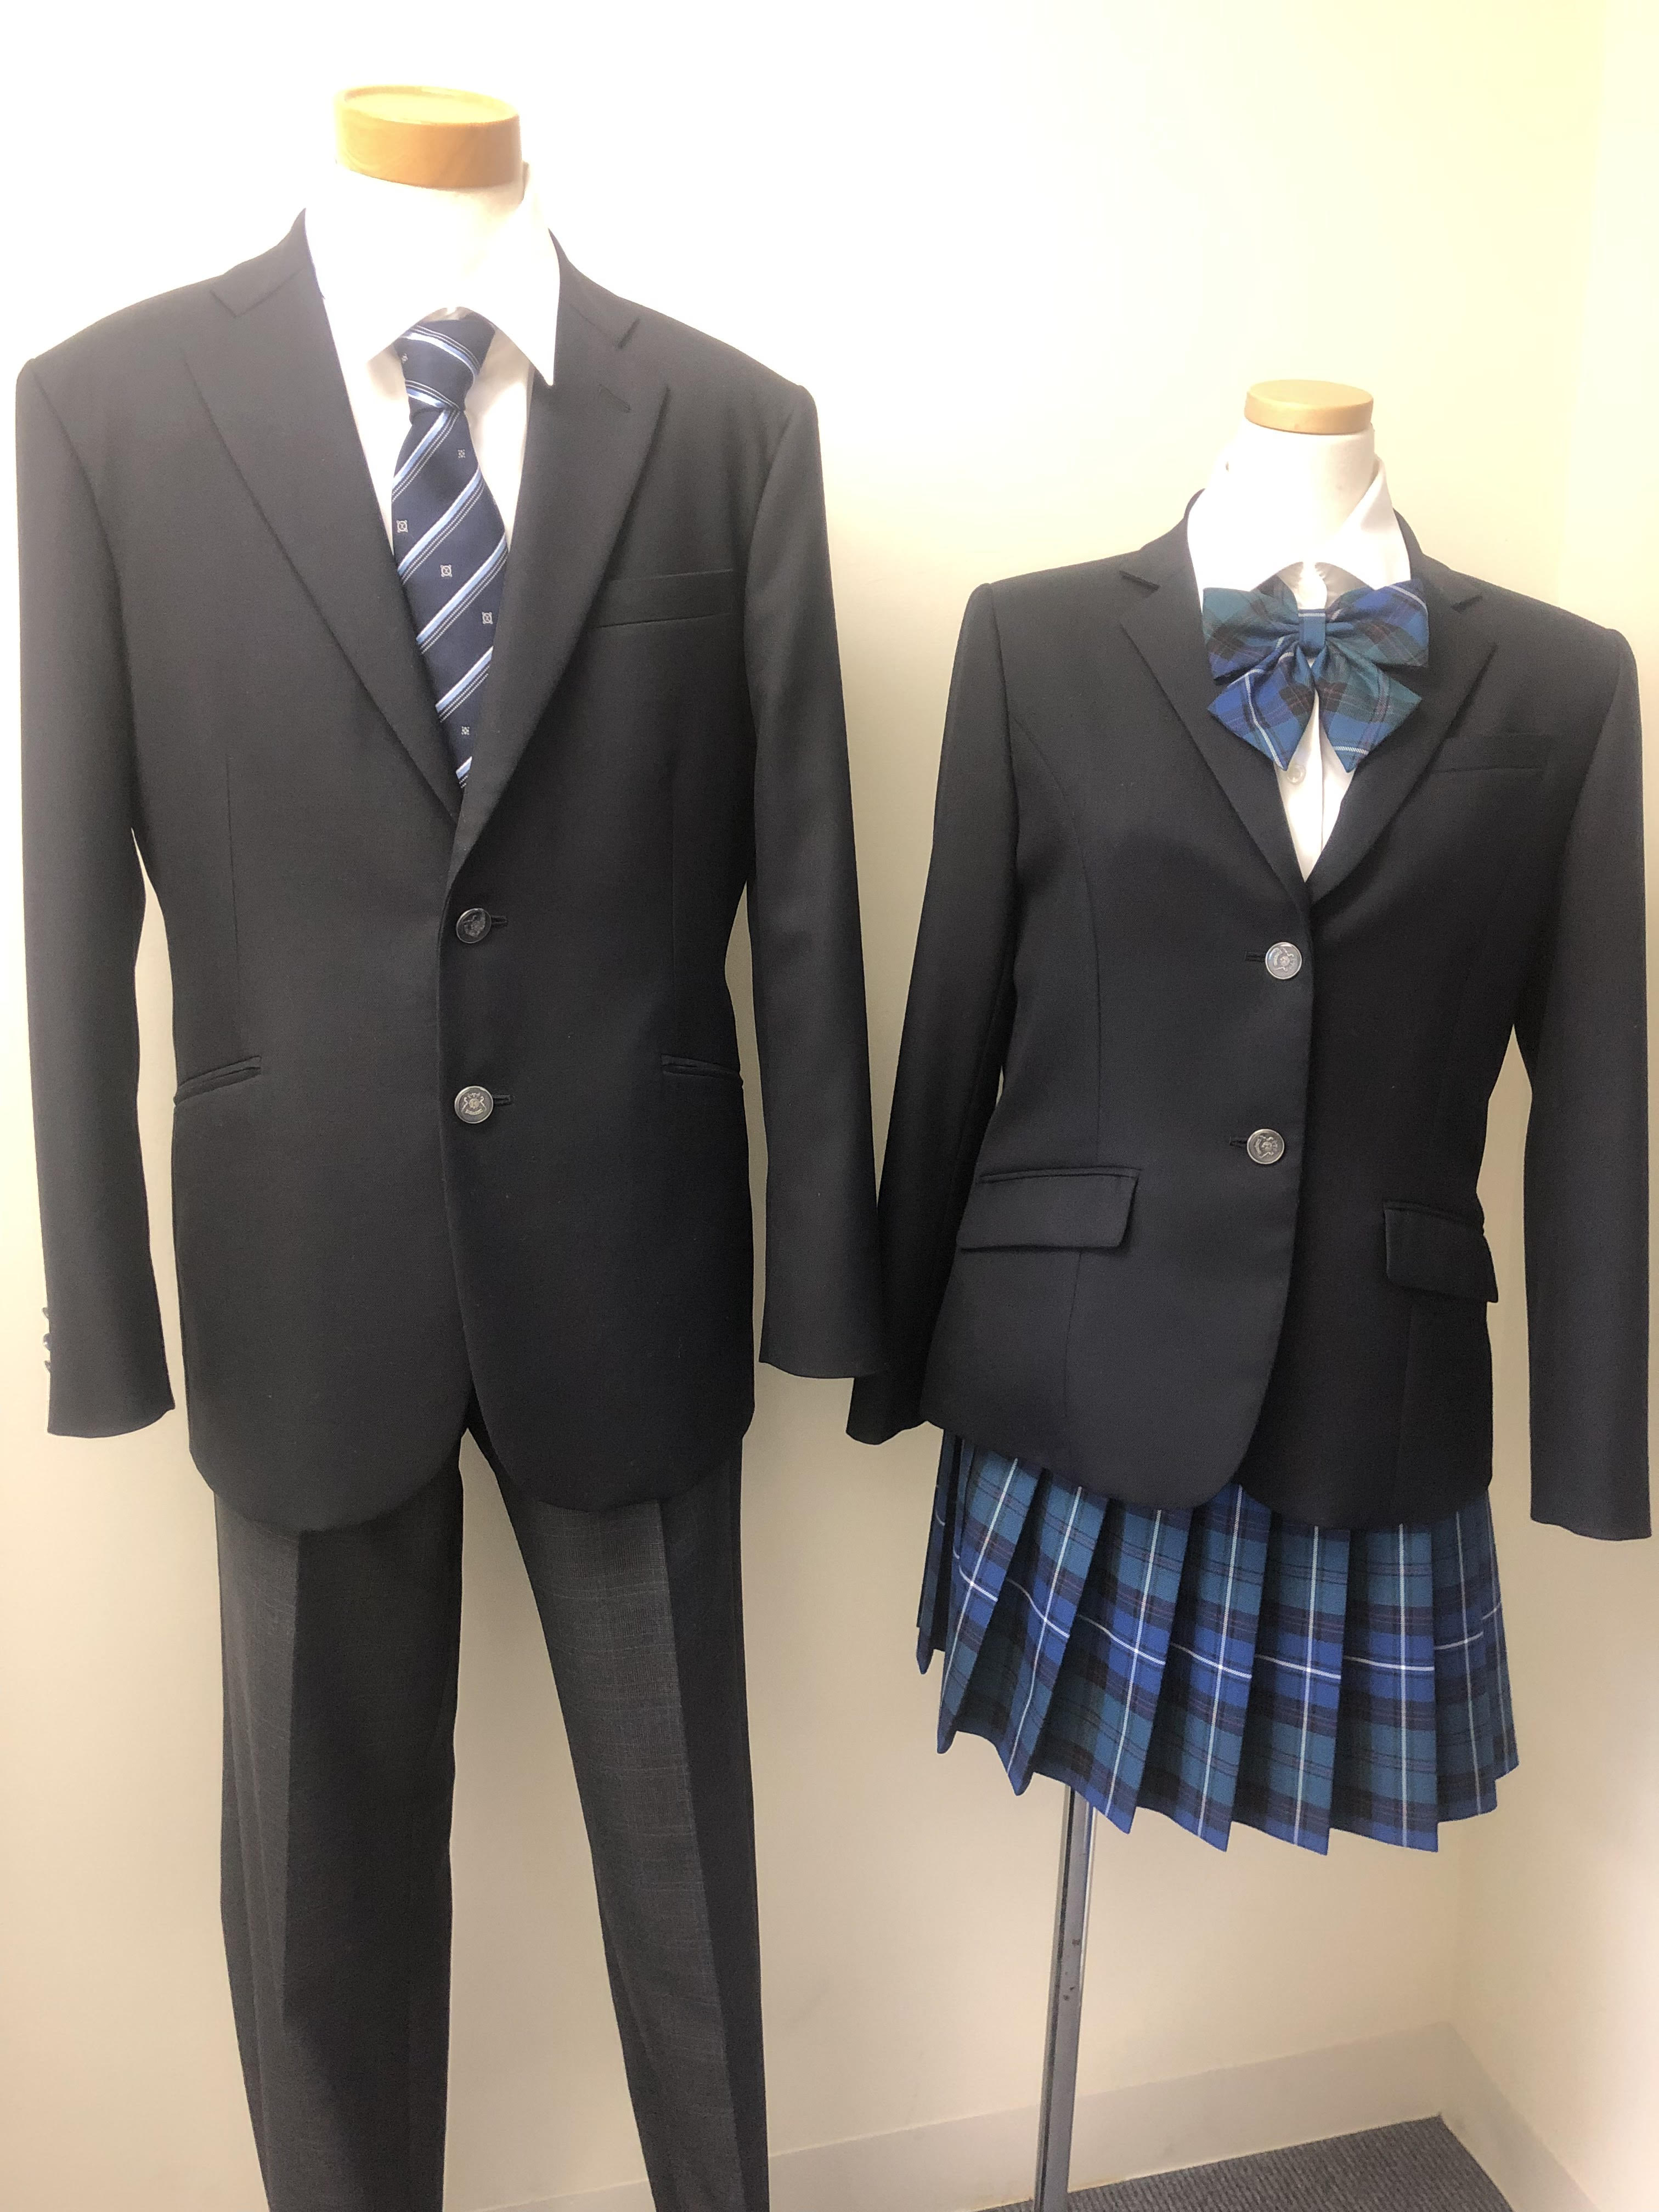 福岡 制服のご紹介です 福岡第二校 通信制高校のヒューマンキャンパス高校